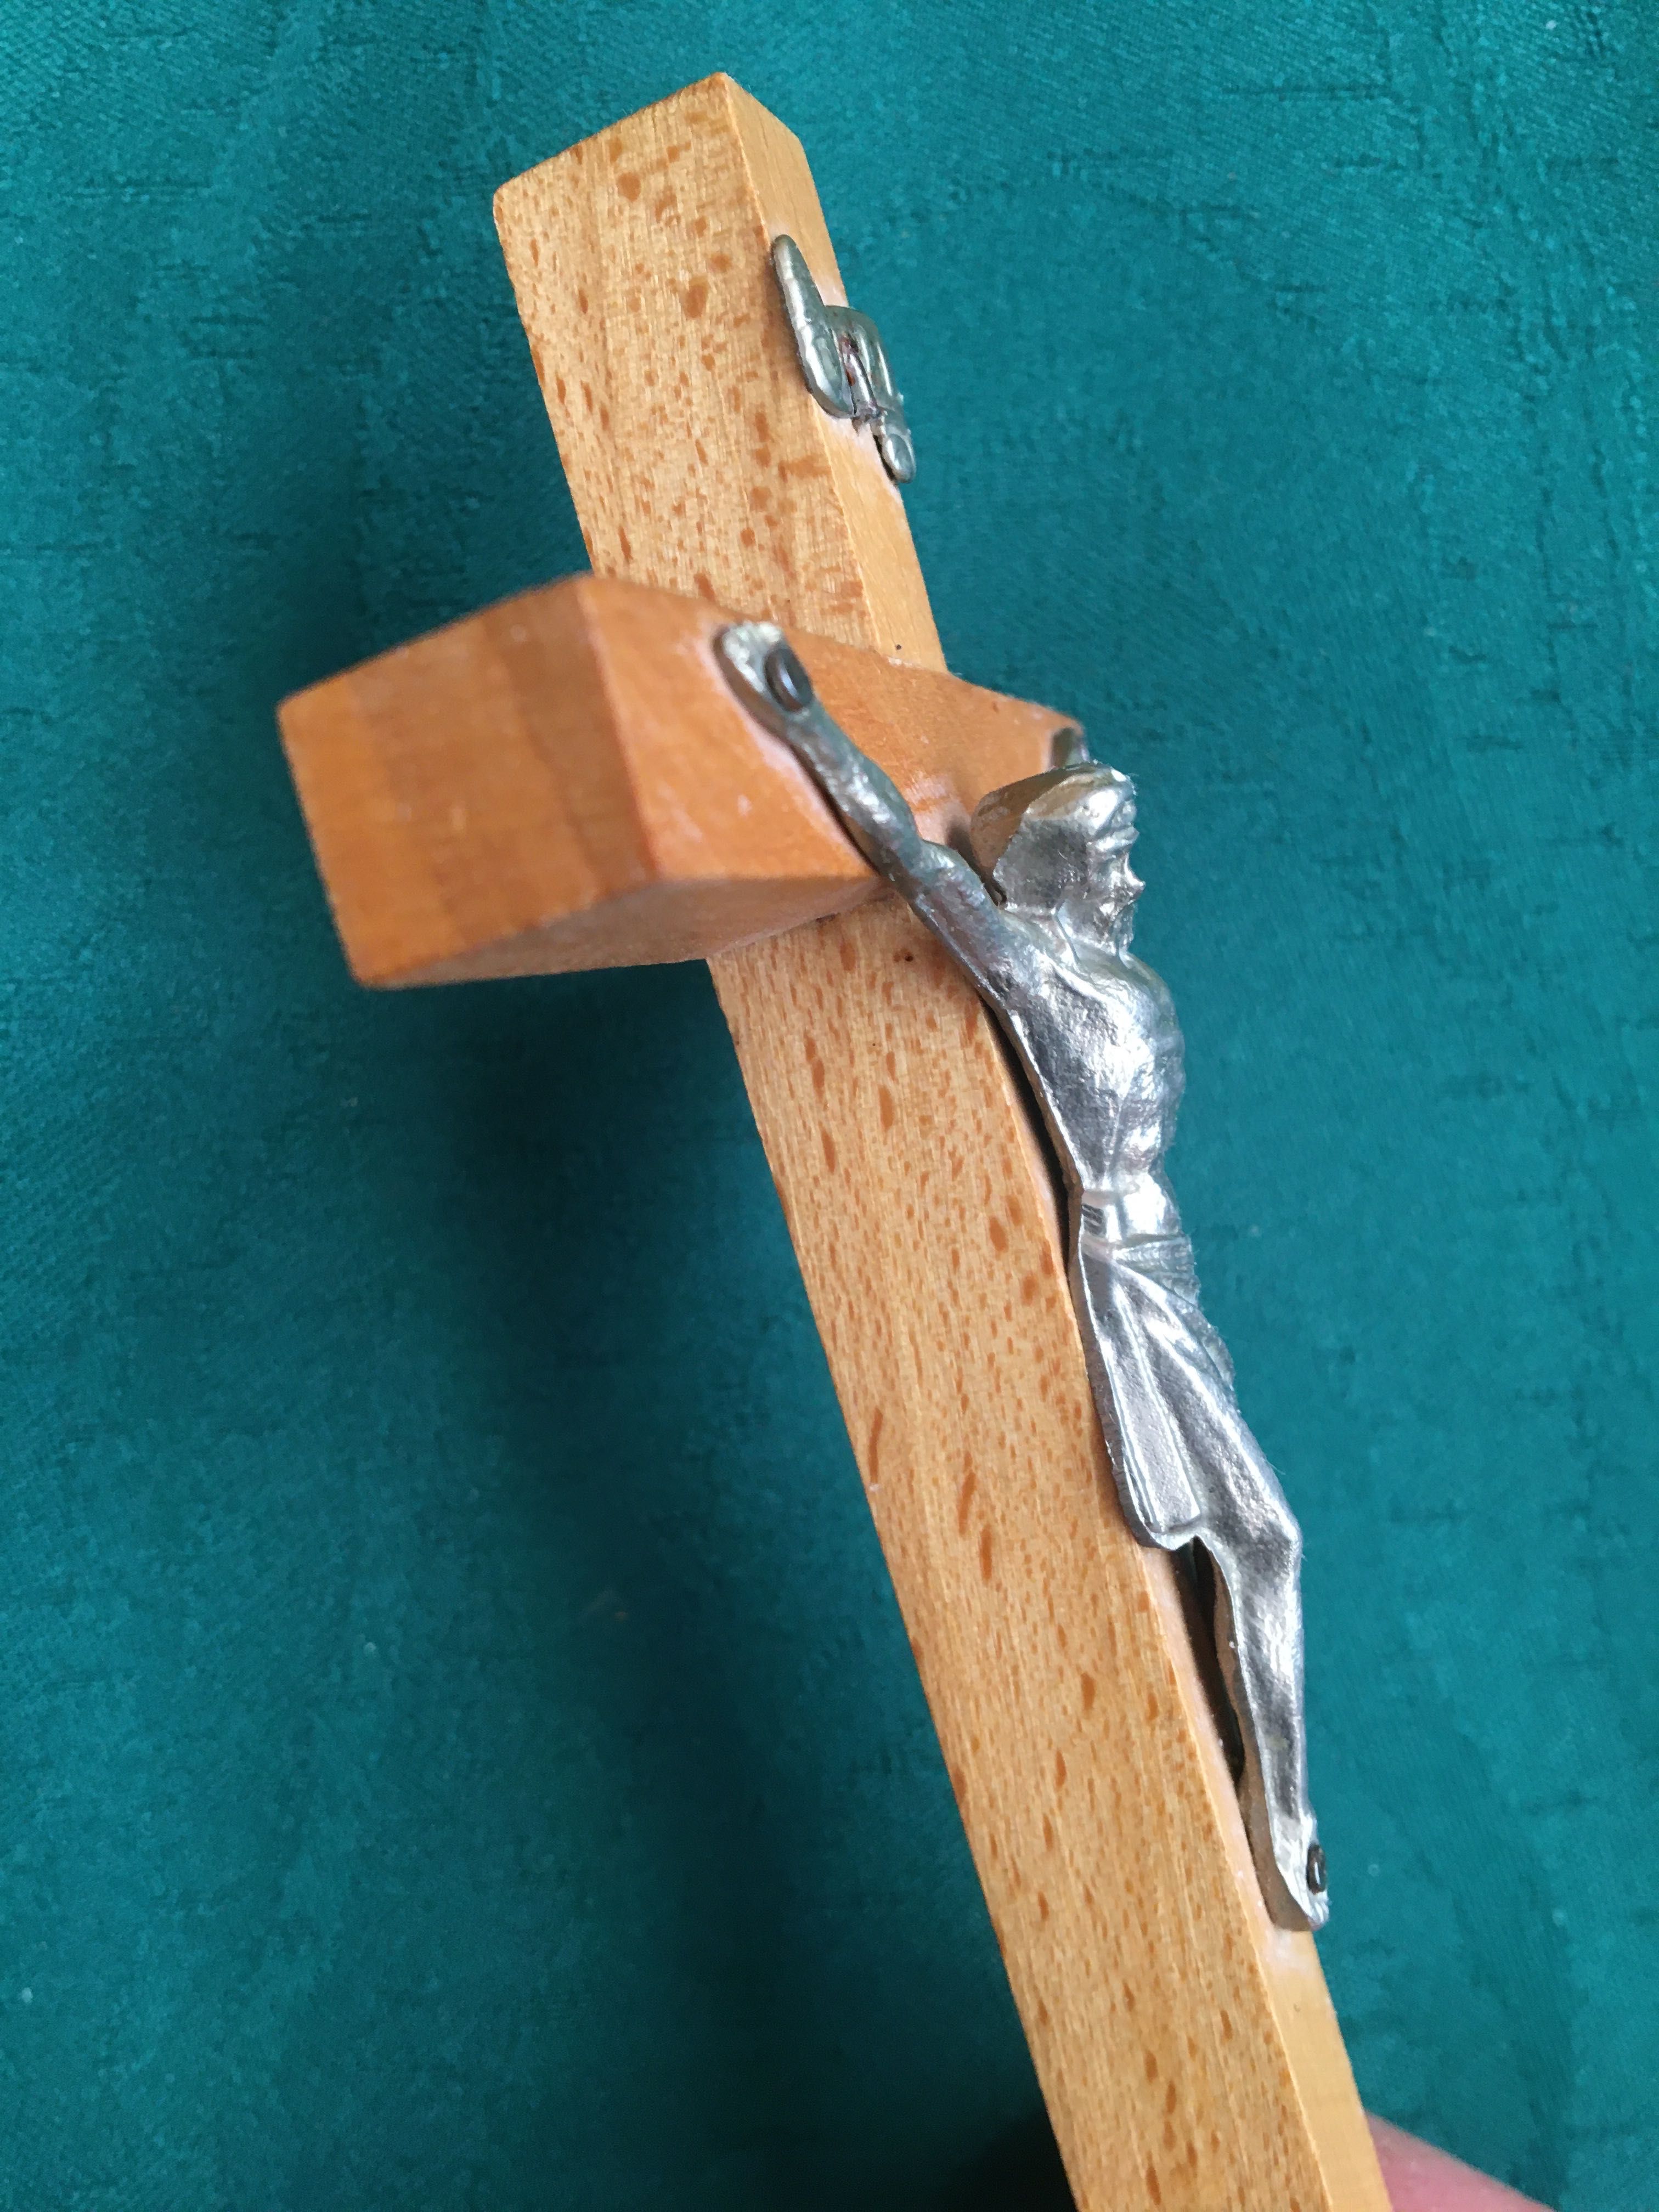 Krzyż ścienny, drewno, 11,5 cm